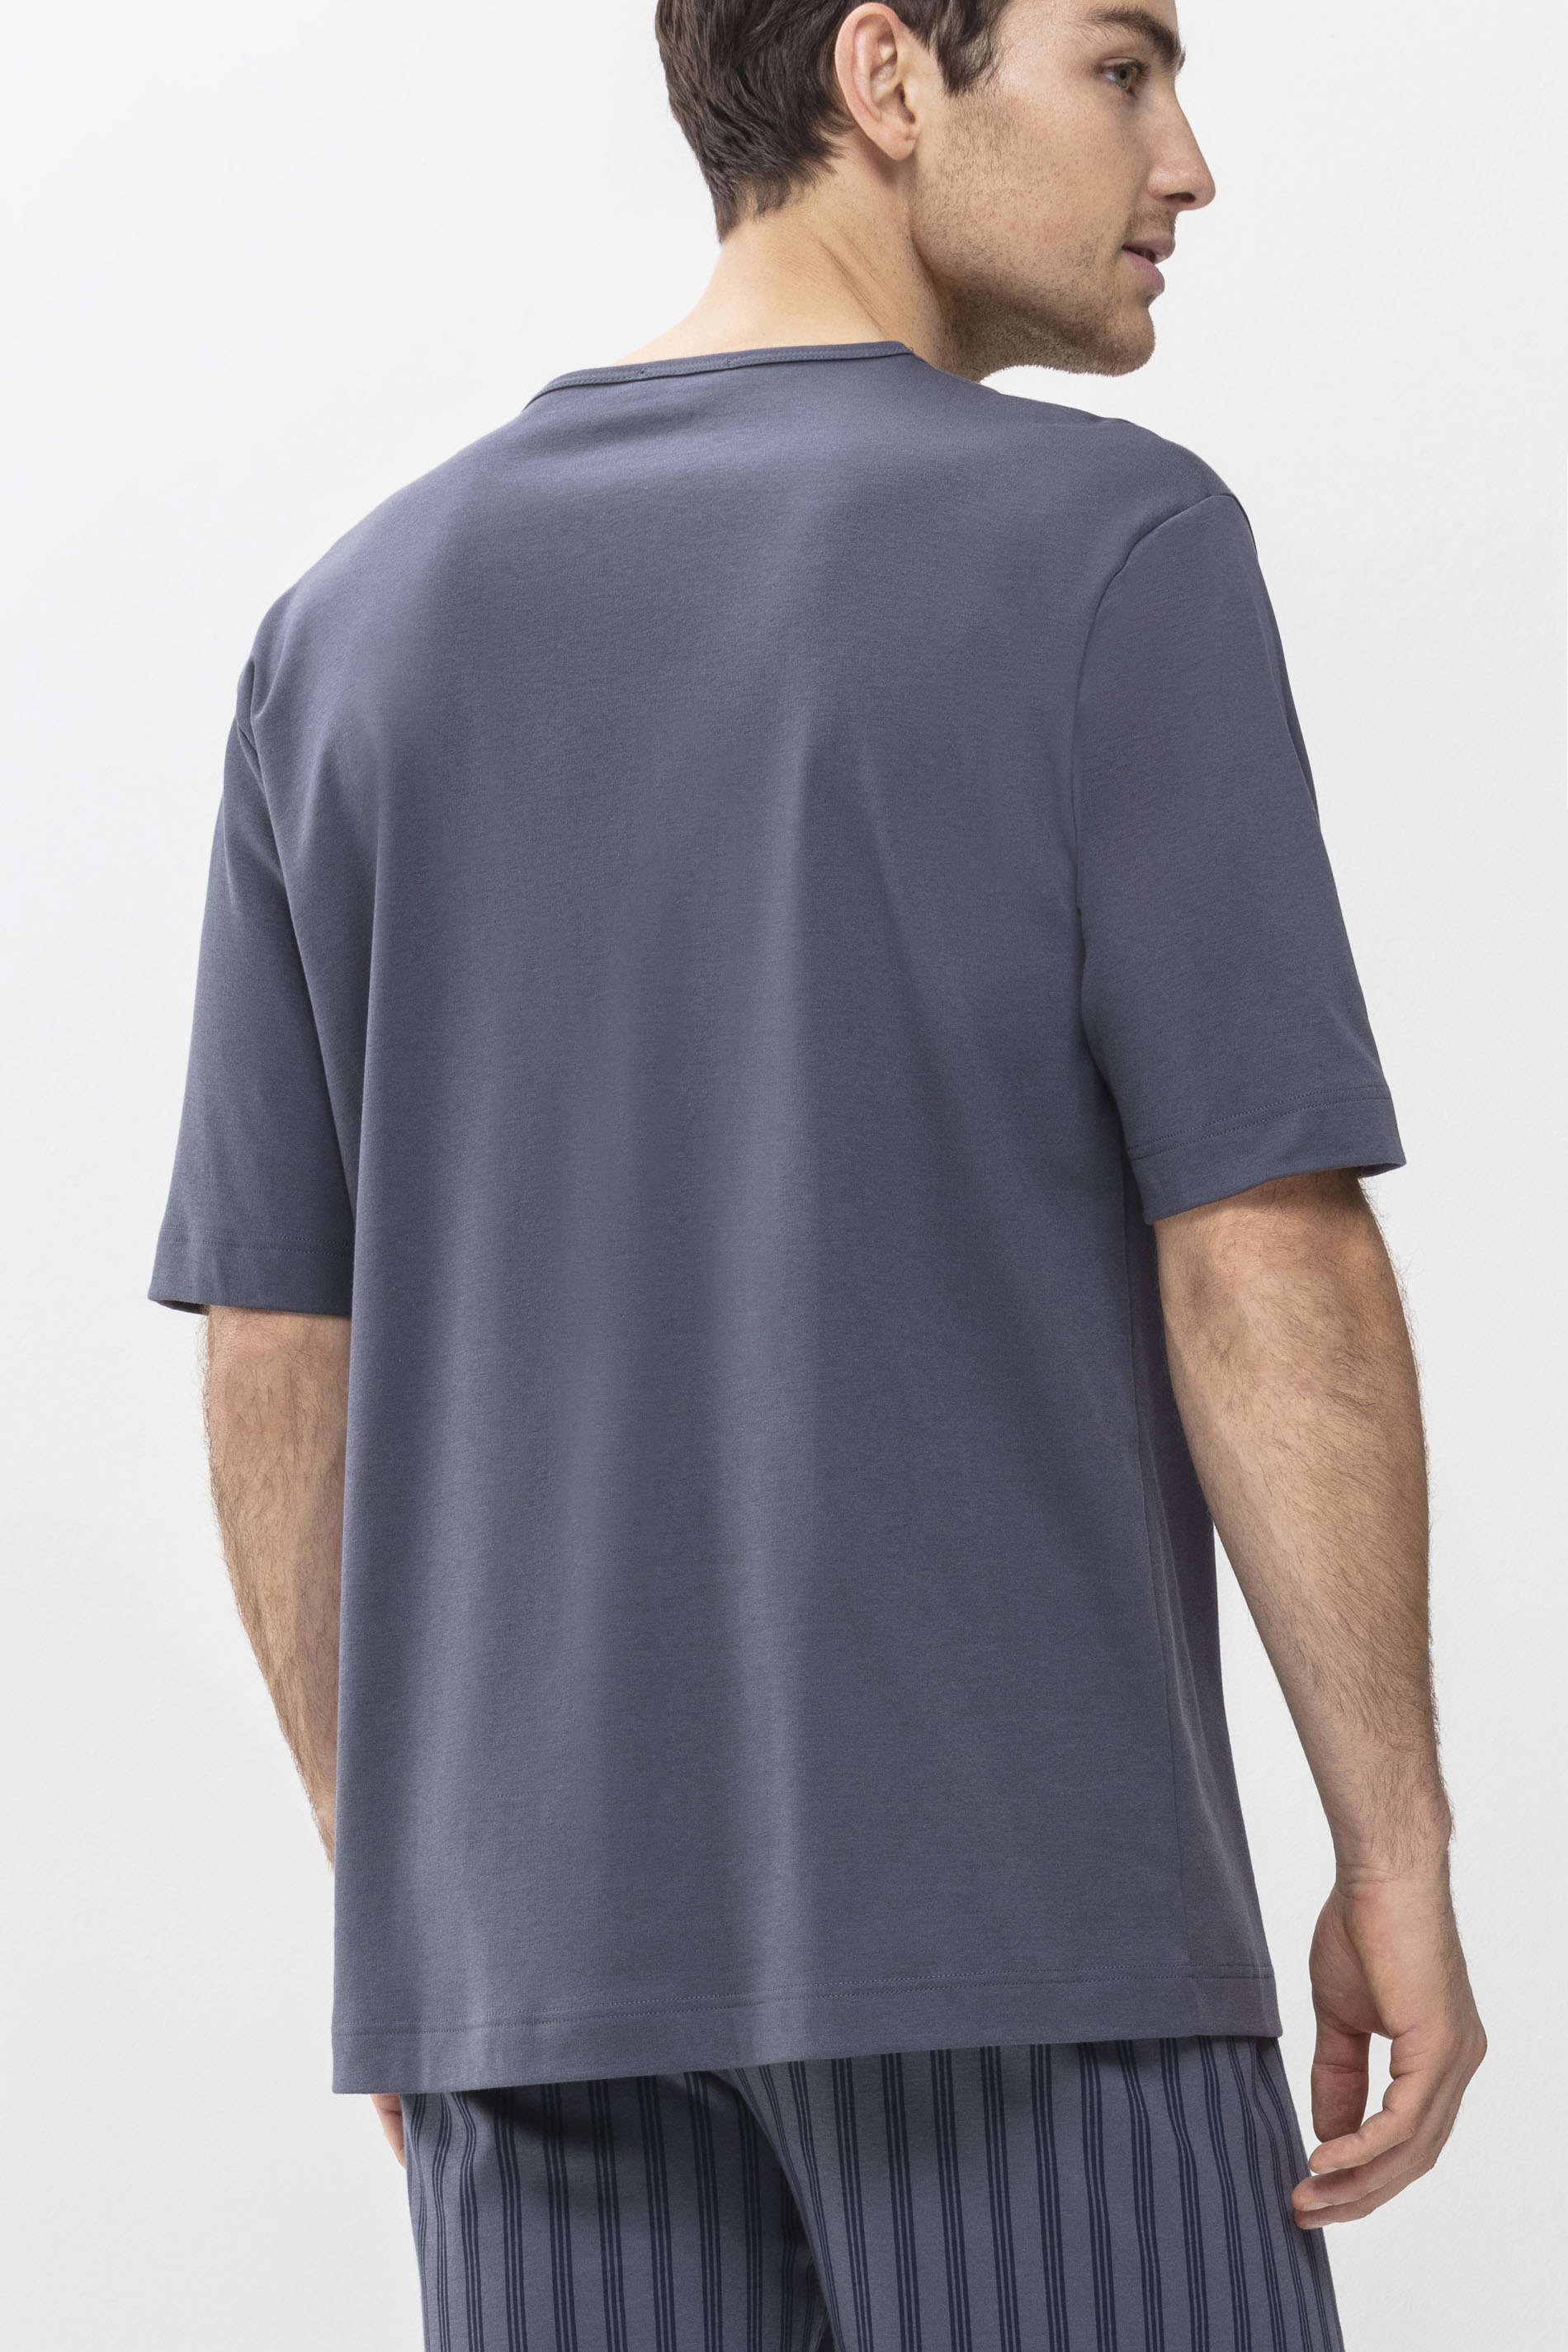 Shirt Soft Grey Serie Melton Rear View | mey®